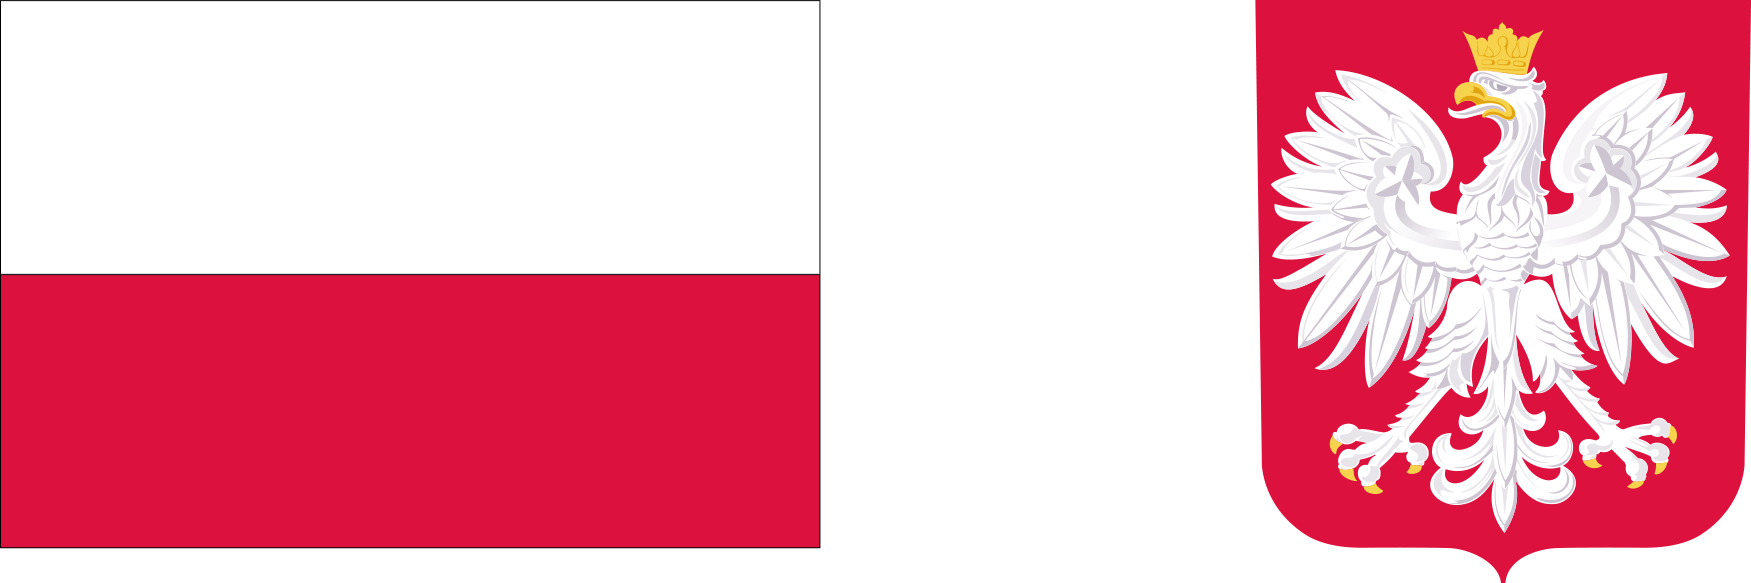 flaga Polski w barwach biało - czerwonych oraz godło RP w kolorze